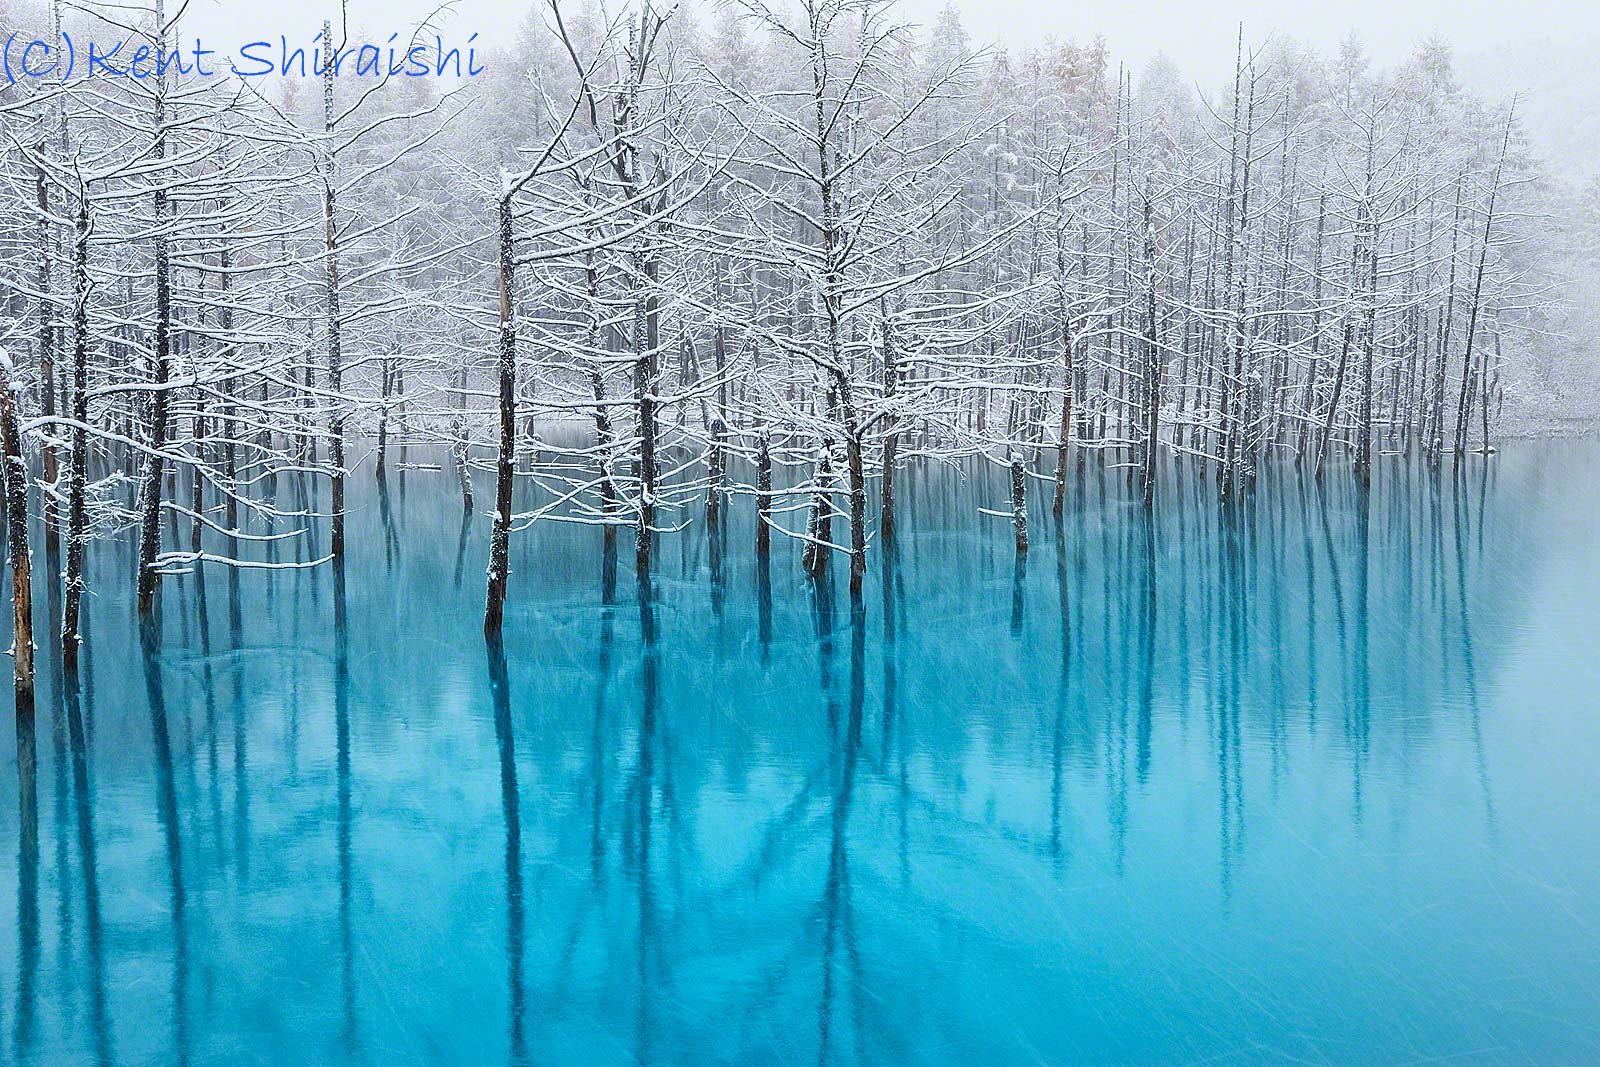 英国の写真誌で大きく 青い池 が掲載されます Kent Shiraishi Photo Blog